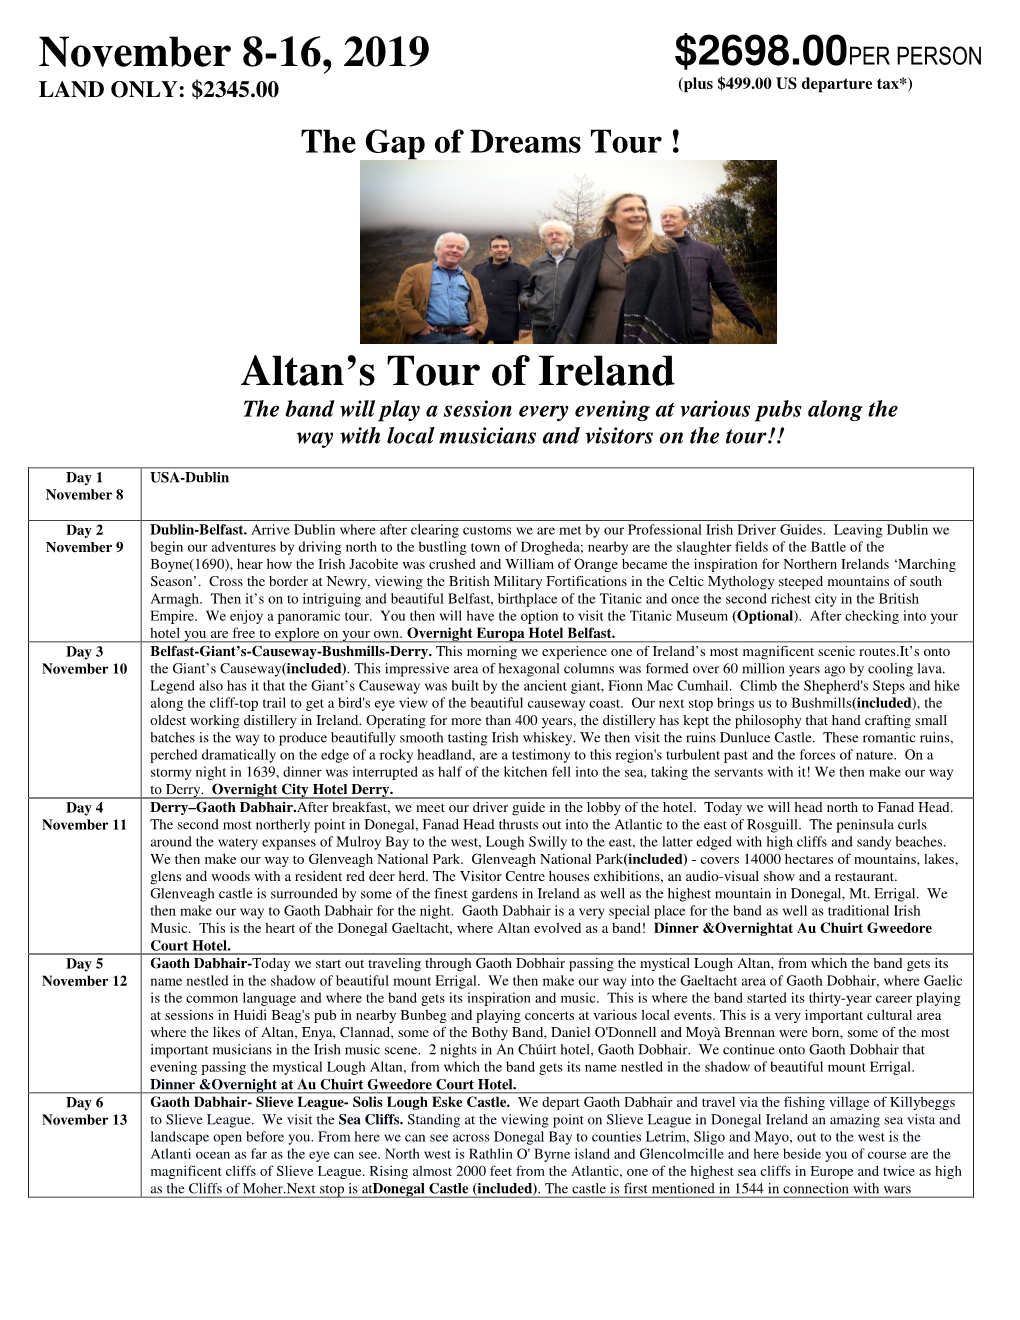 Altan's Tour of Ireland November 8-16, 2019